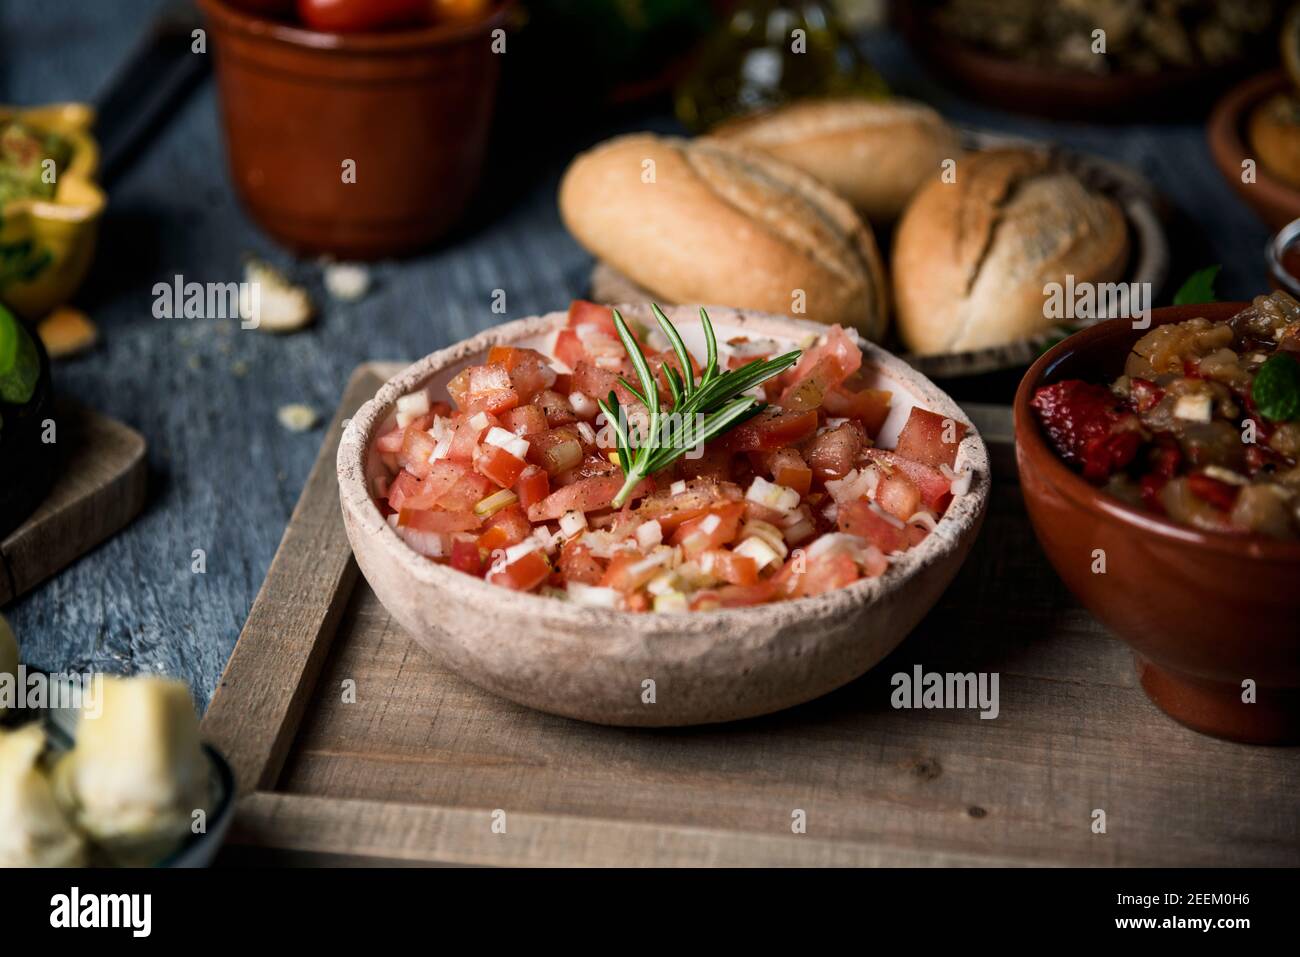 primo piano di un'insalata di pomodoro servita su una ciotola rustica su un tavolo rustico grigio accanto ad alcuni piatti e. ciotole con altri ingredienti vegetariani e contorno Foto Stock